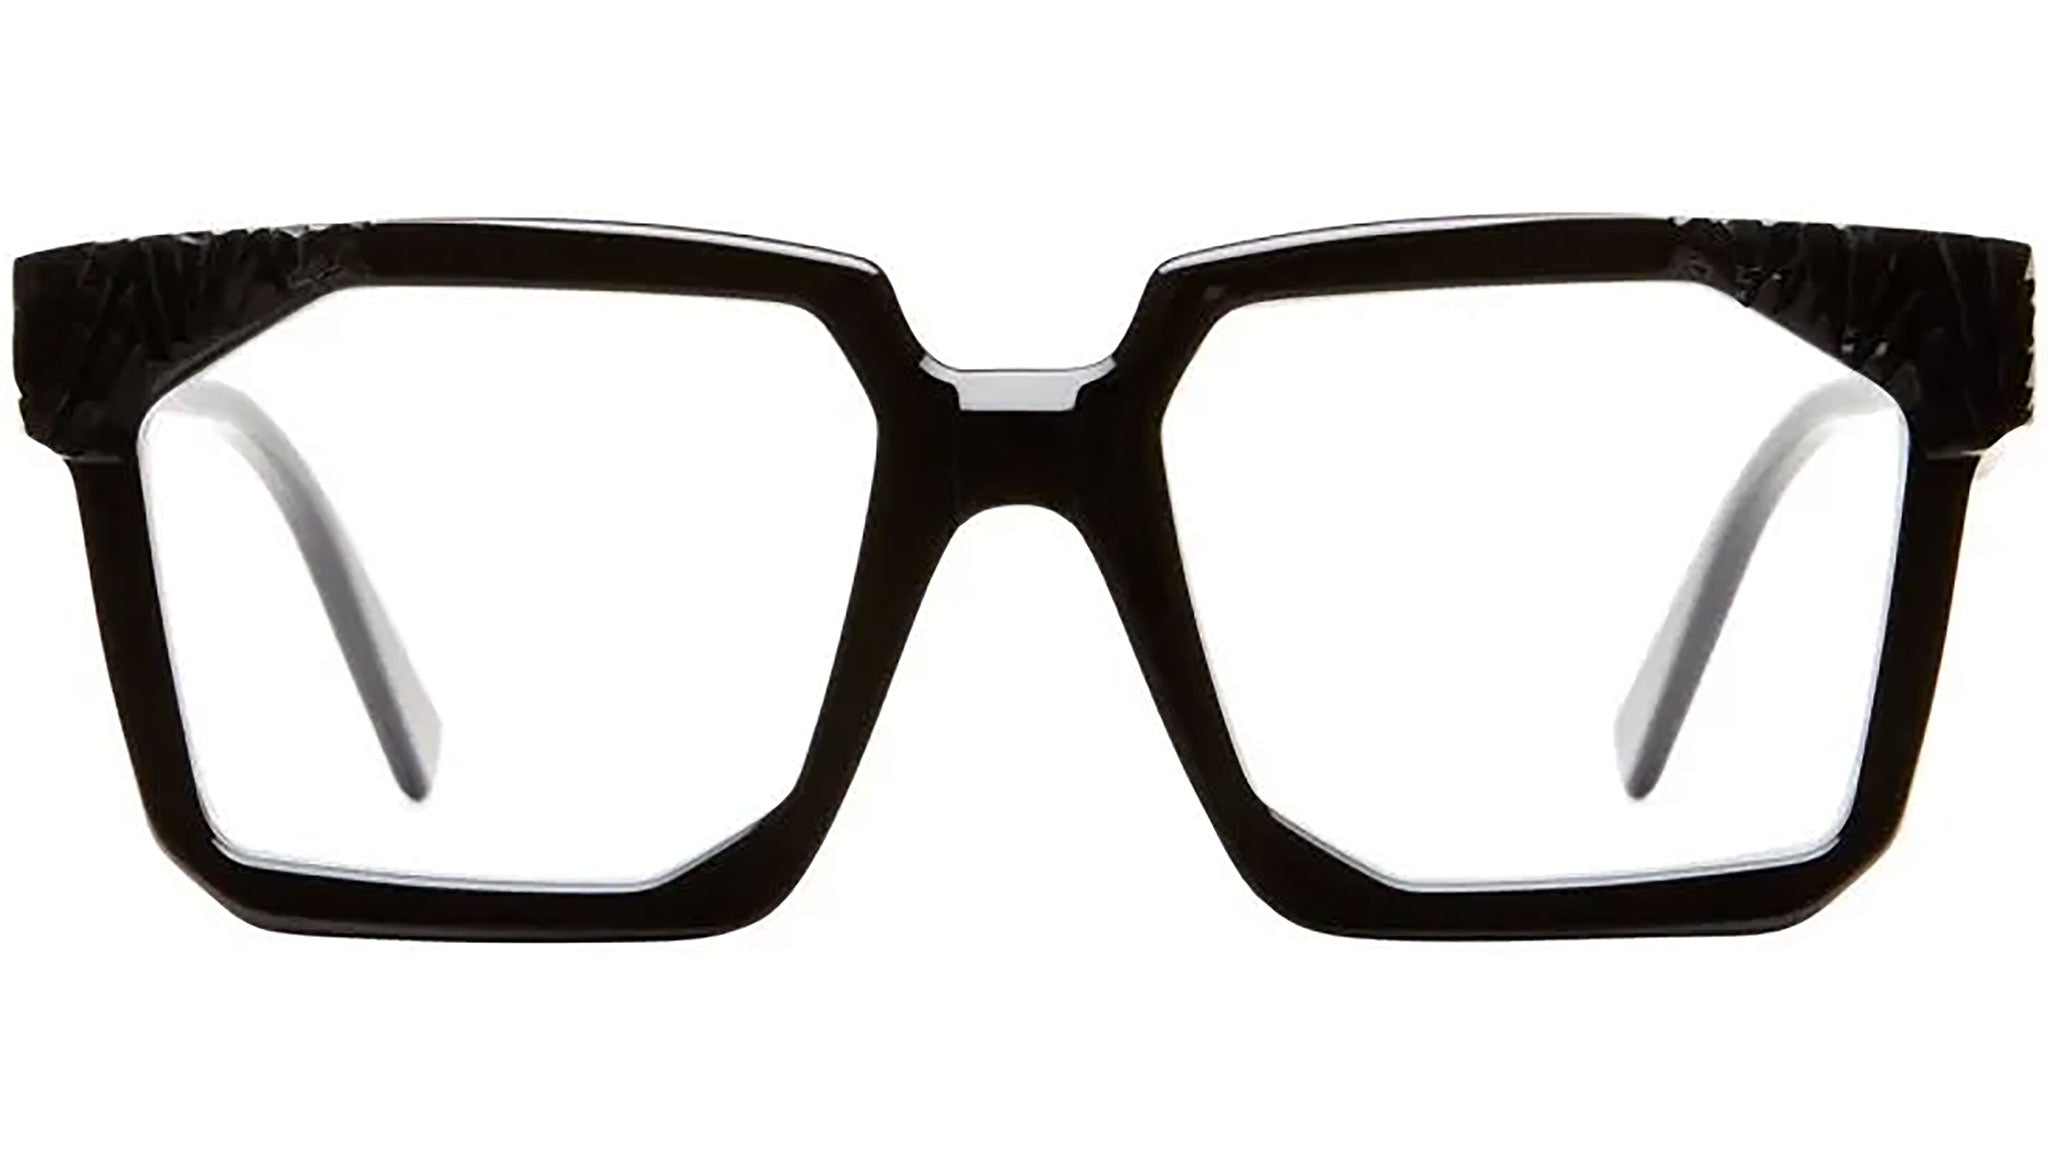 Louis Vuitton 1.1 Clear Millionaires Sunglasses Black Acetate. Size W